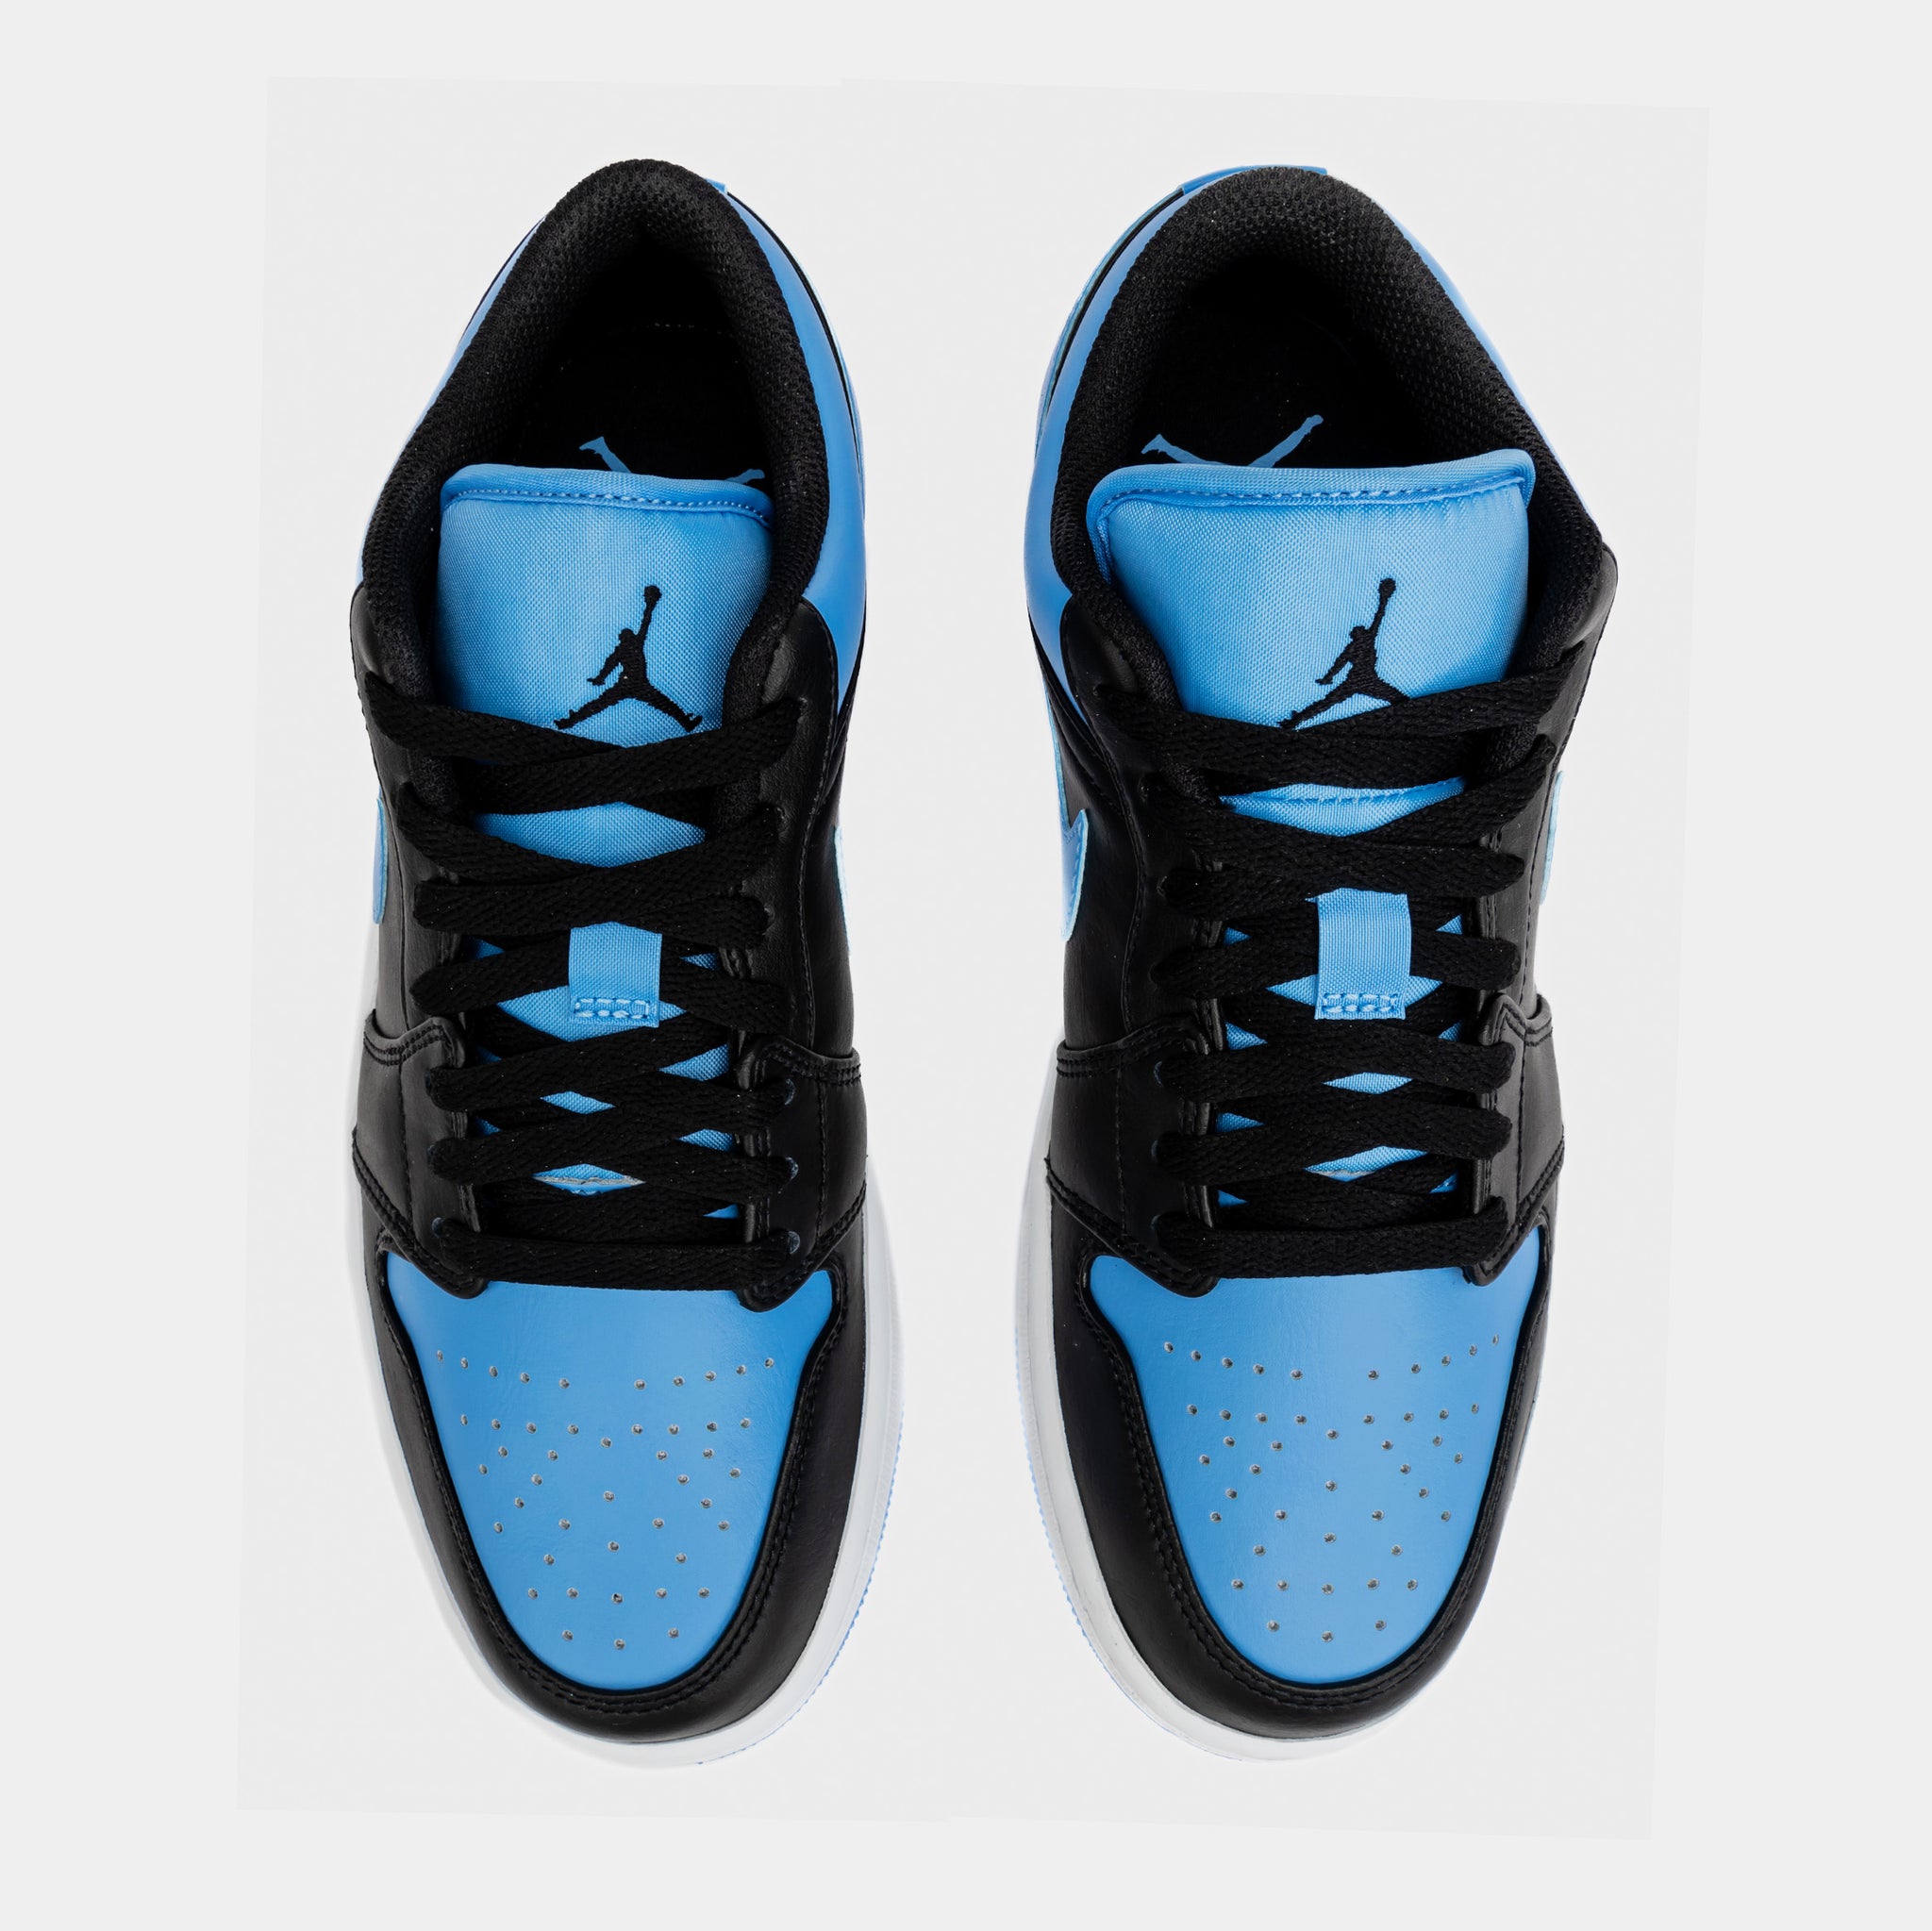 Air Jordan 1 Retro Low University Blue Mens Lifestyle Shoes (Black/Blue)